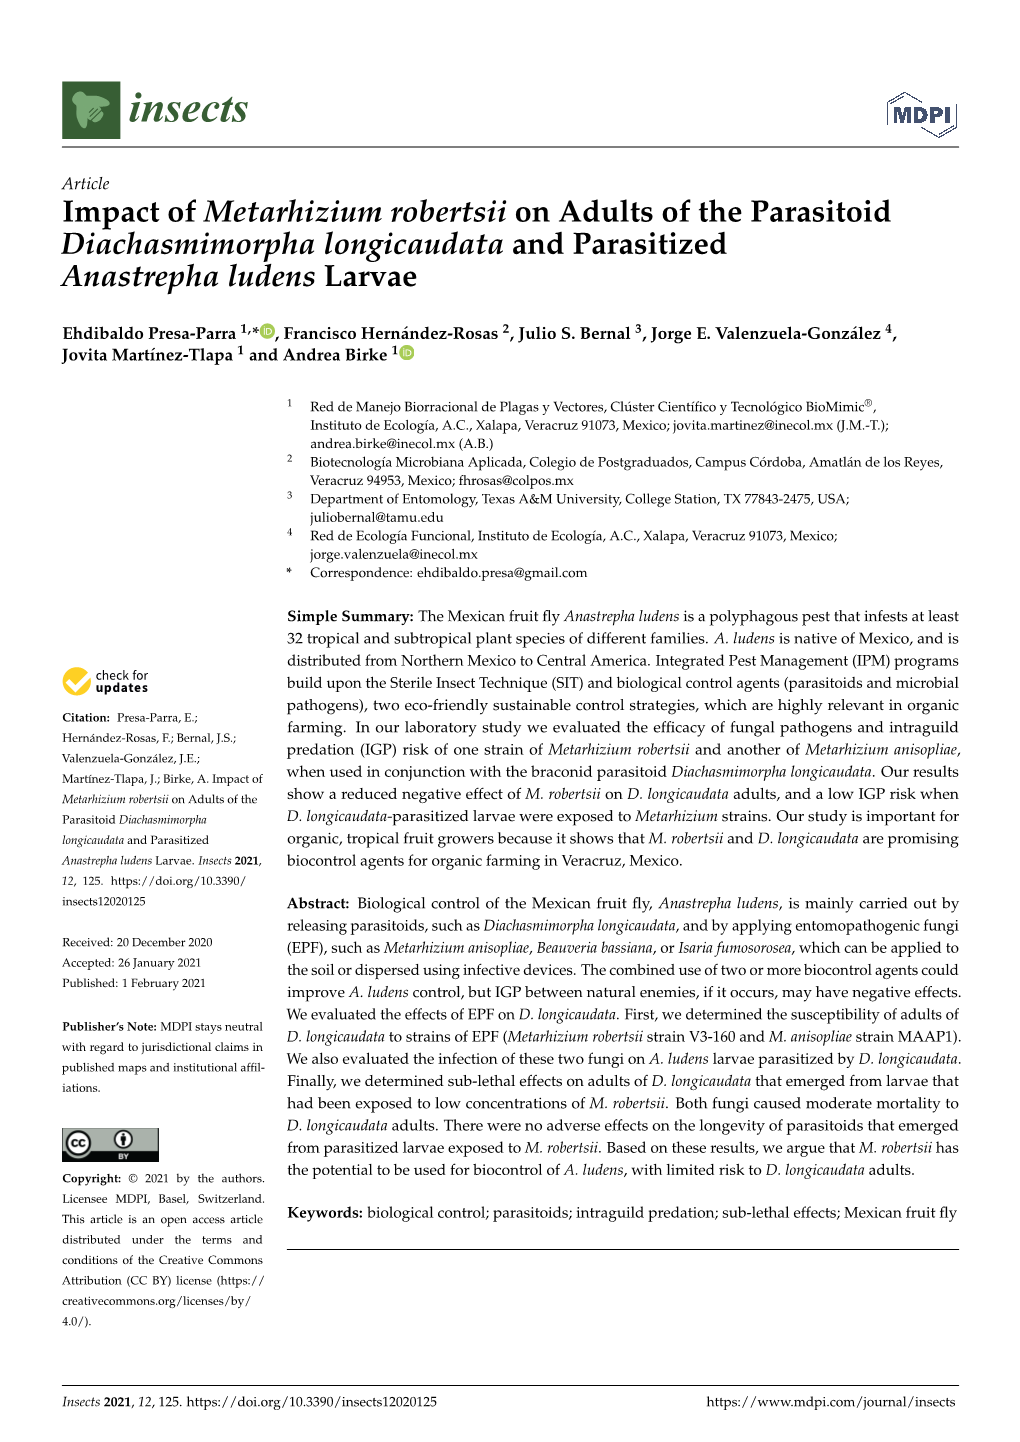 Impact of Metarhizium Robertsii on Adults of the Parasitoid Diachasmimorpha Longicaudata and Parasitized Anastrepha Ludens Larvae